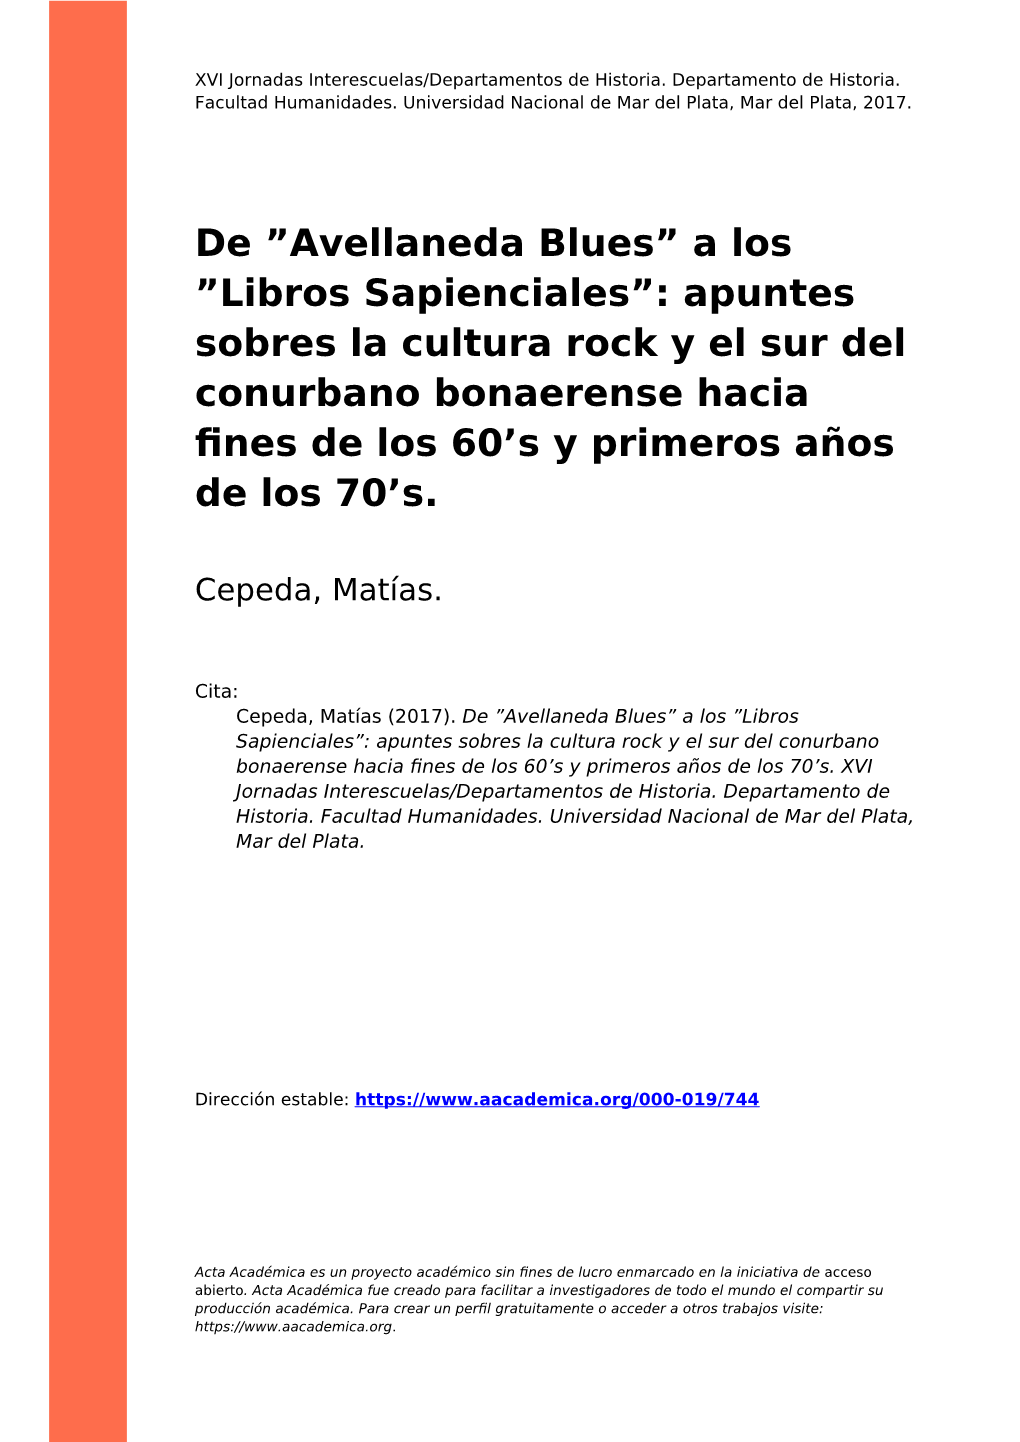 Avellaneda Blues” a Los ”Libros Sapienciales”: Apuntes Sobres La Cultura Rock Y El Sur Del Conurbano Bonaerense Hacia ﬁnes De Los 60’S Y Primeros Años De Los 70’S